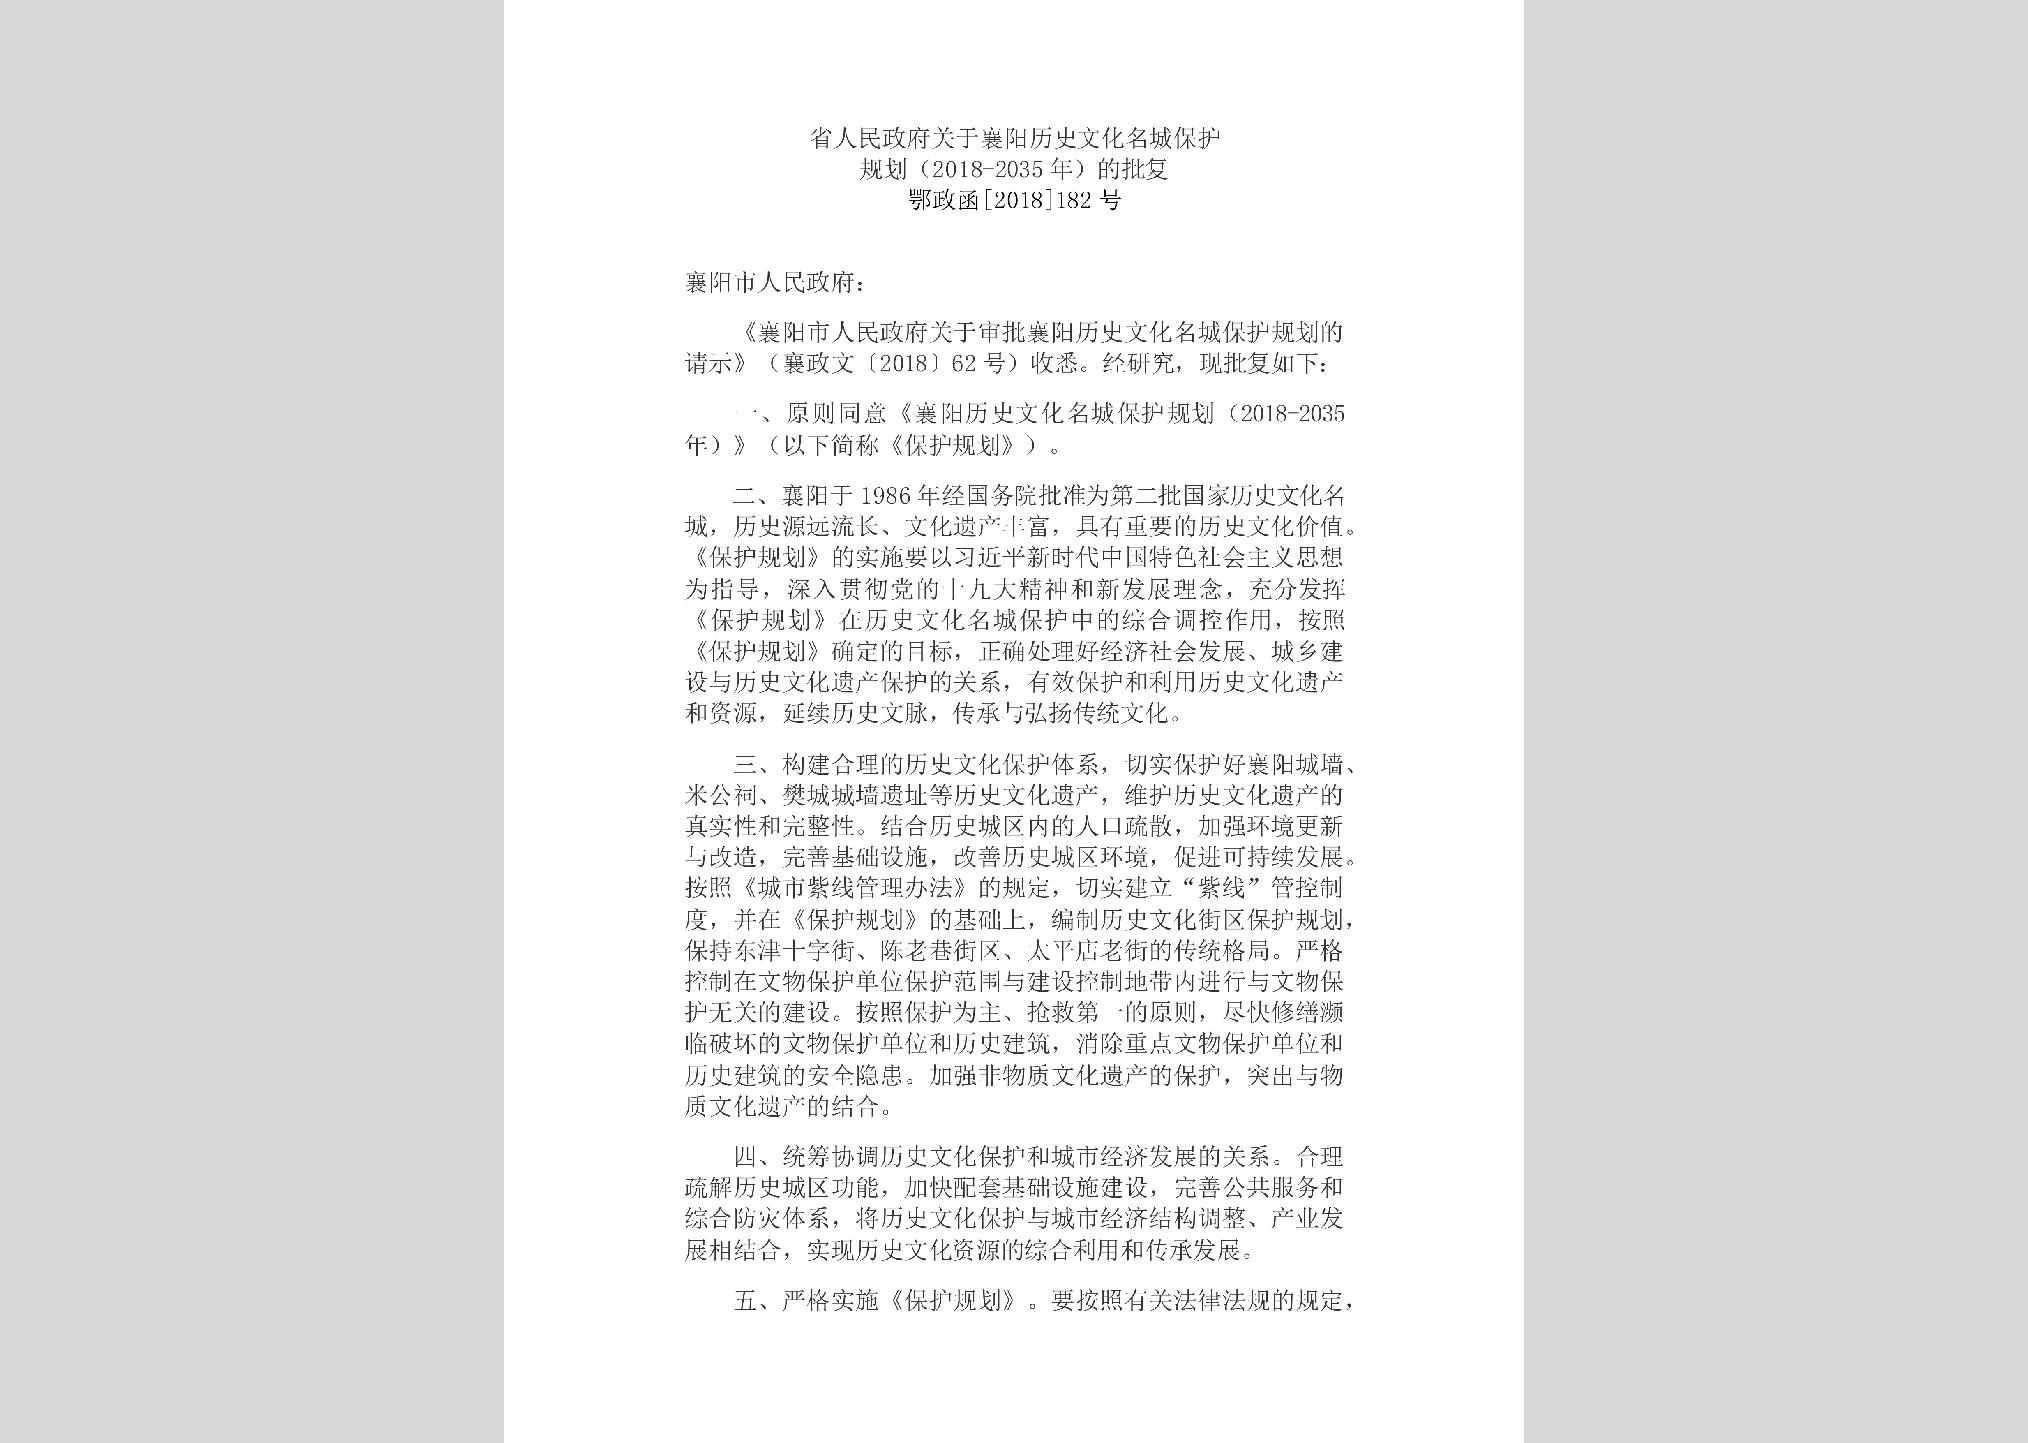 鄂政函[2018]182号：省人民政府关于襄阳历史文化
名城保护规划（2018-2035年）的批复